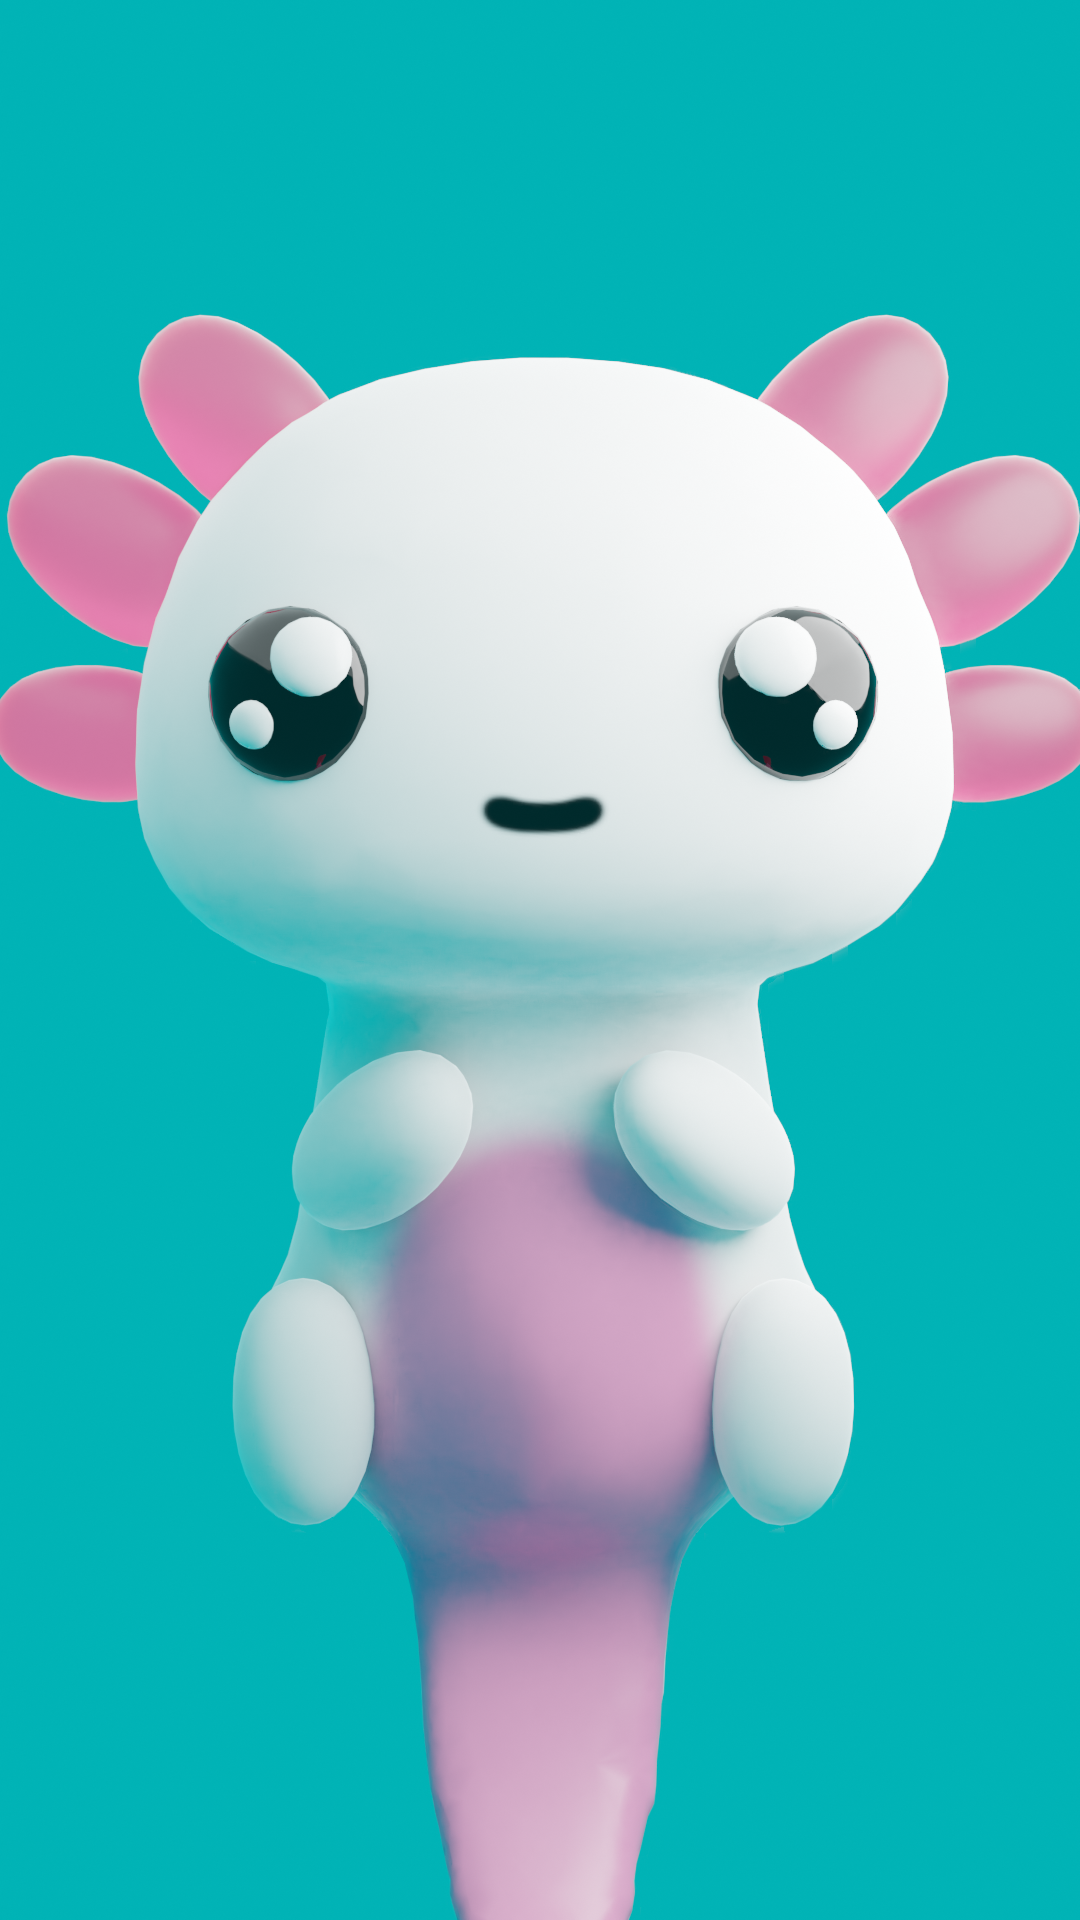 Cute axolotl preview image 1